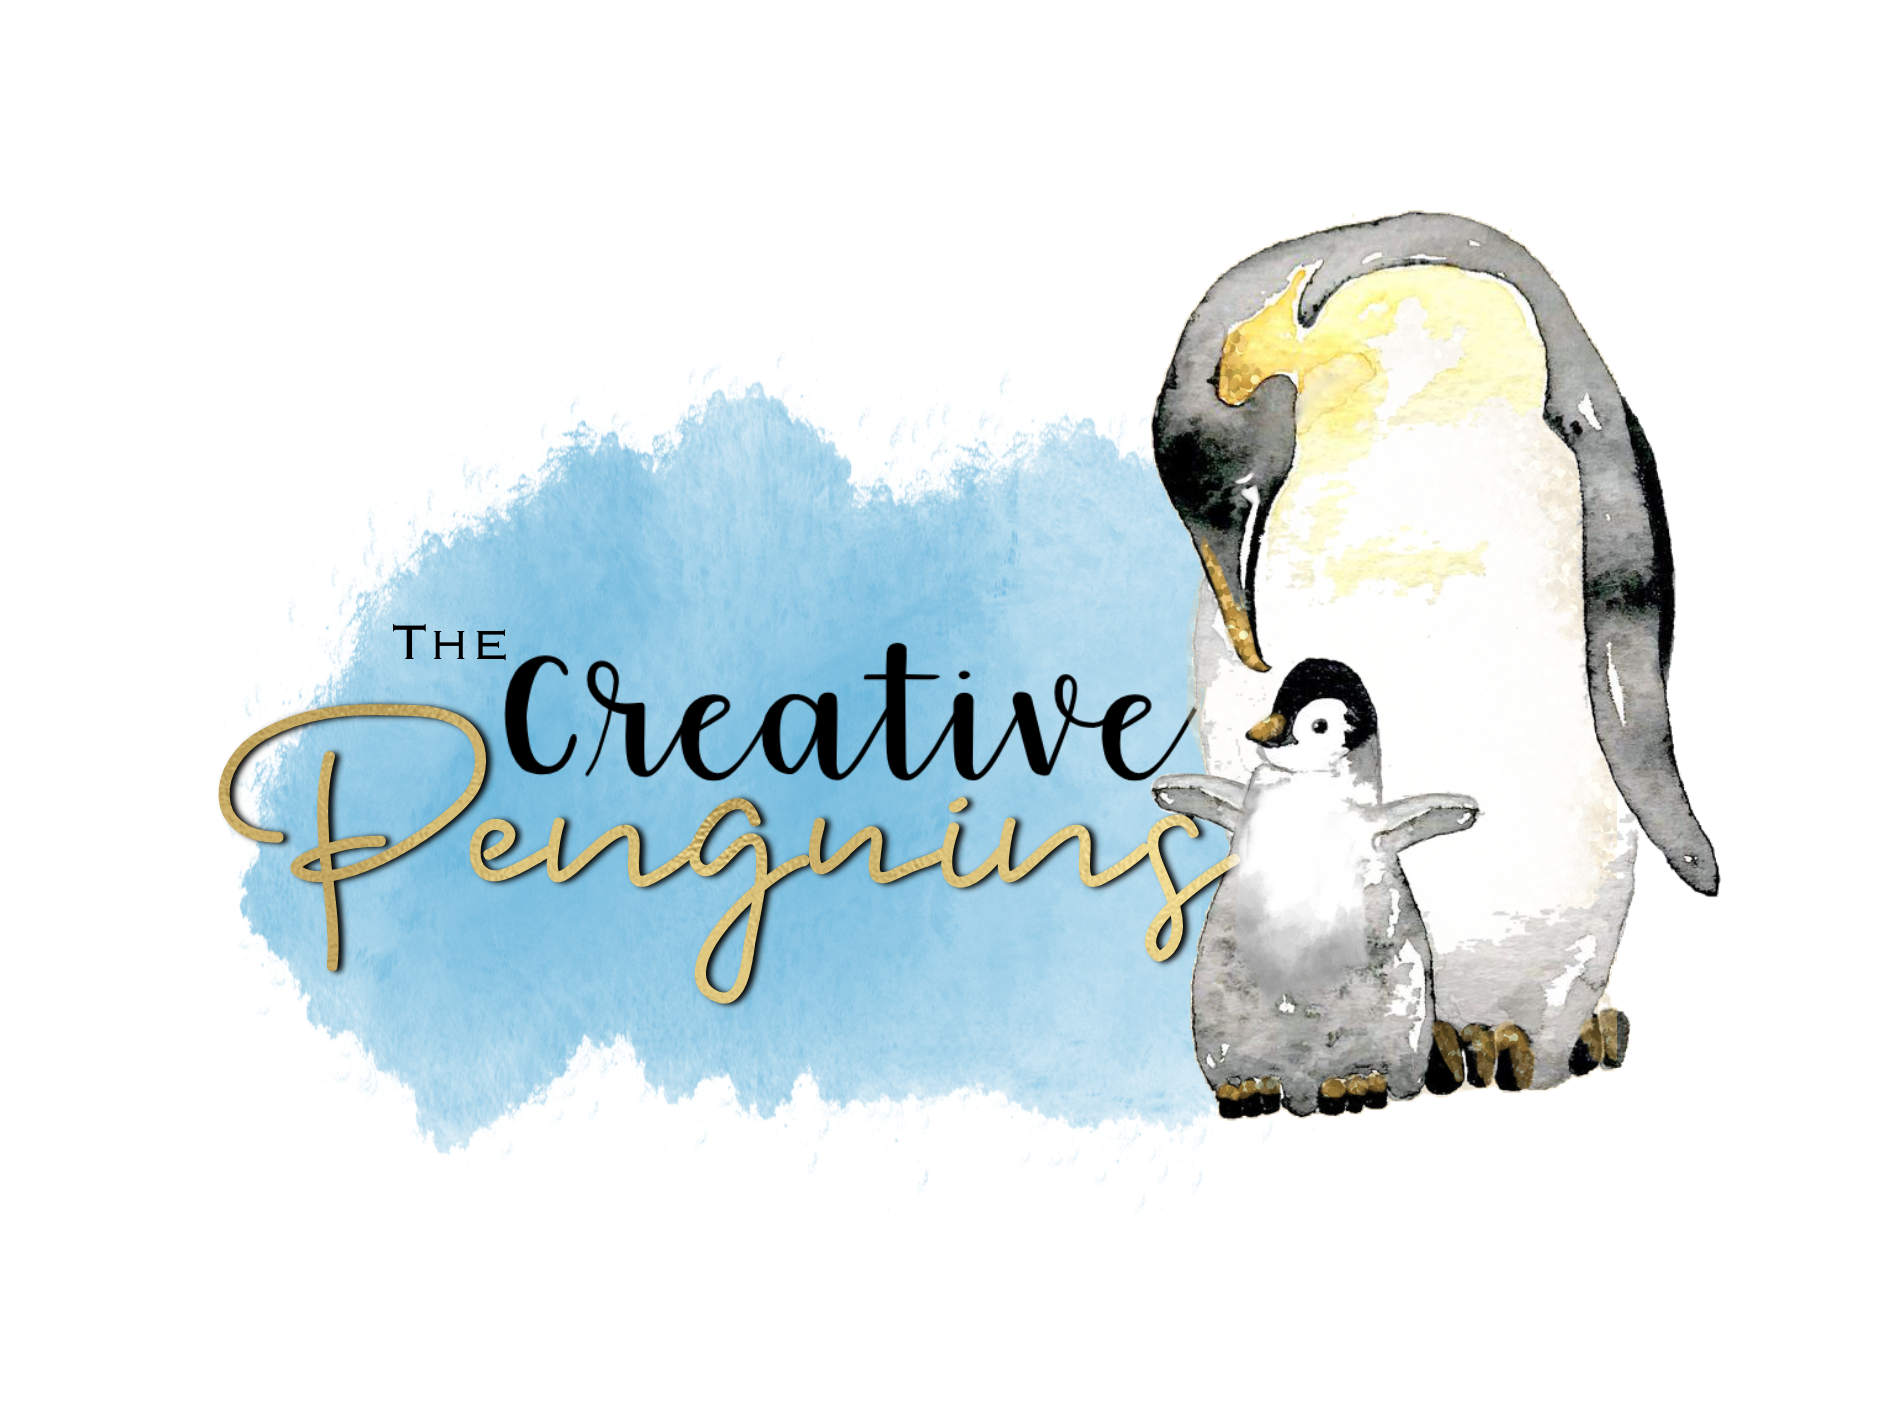 The Creative Penguins - The Creative Penguins